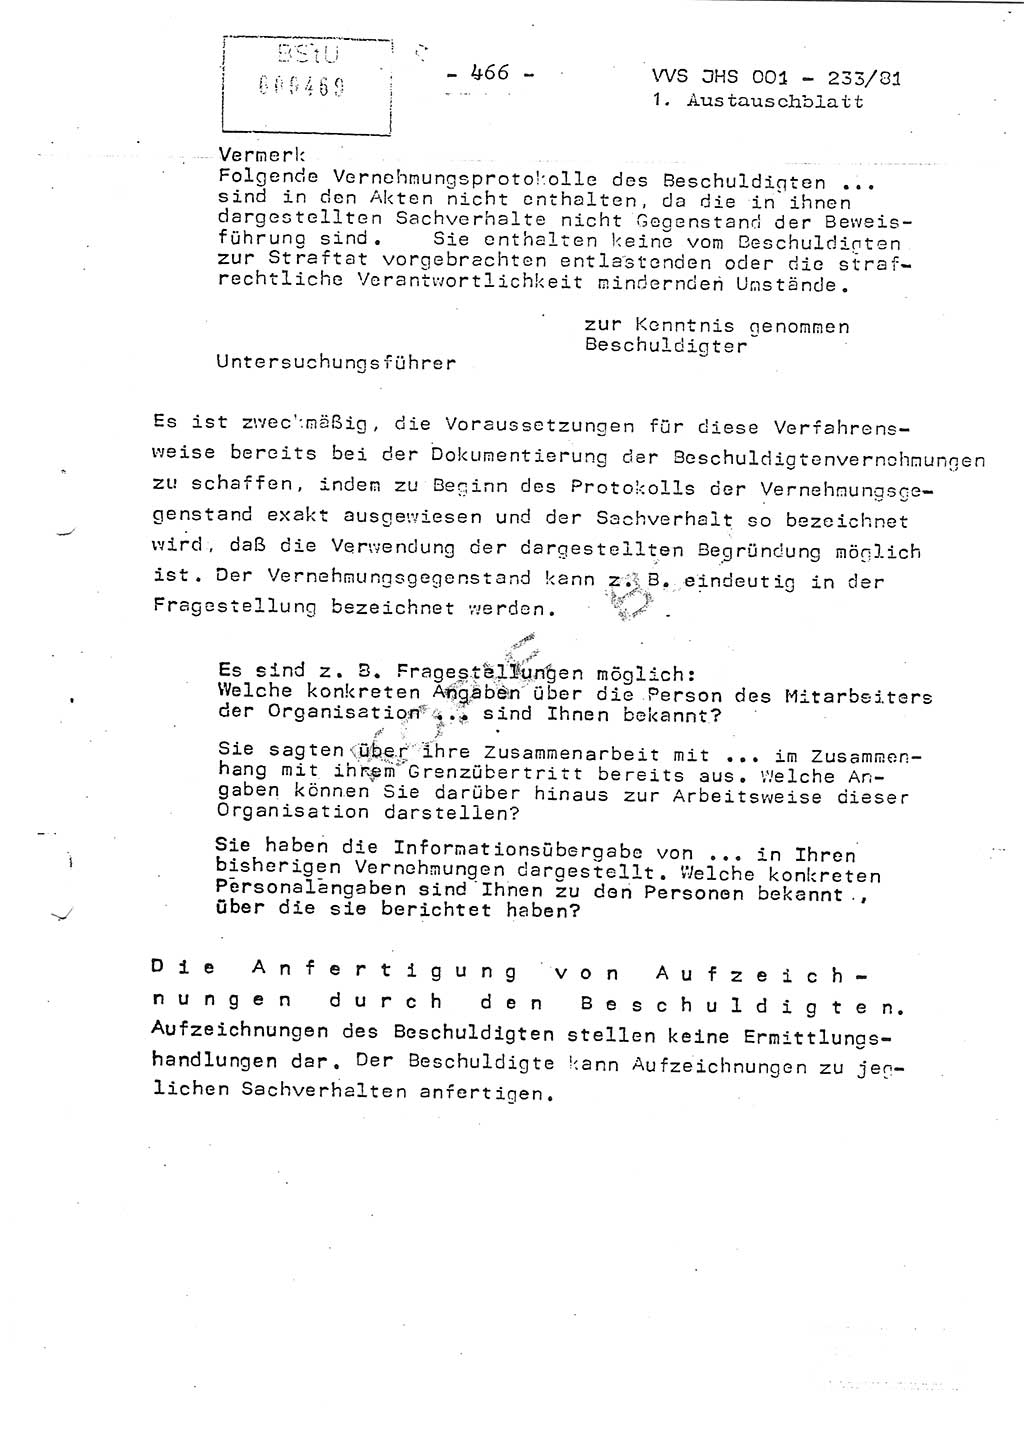 Dissertation Oberstleutnant Horst Zank (JHS), Oberstleutnant Dr. Karl-Heinz Knoblauch (JHS), Oberstleutnant Gustav-Adolf Kowalewski (HA Ⅸ), Oberstleutnant Wolfgang Plötner (HA Ⅸ), Ministerium für Staatssicherheit (MfS) [Deutsche Demokratische Republik (DDR)], Juristische Hochschule (JHS), Vertrauliche Verschlußsache (VVS) o001-233/81, Potsdam 1981, Blatt 466 (Diss. MfS DDR JHS VVS o001-233/81 1981, Bl. 466)